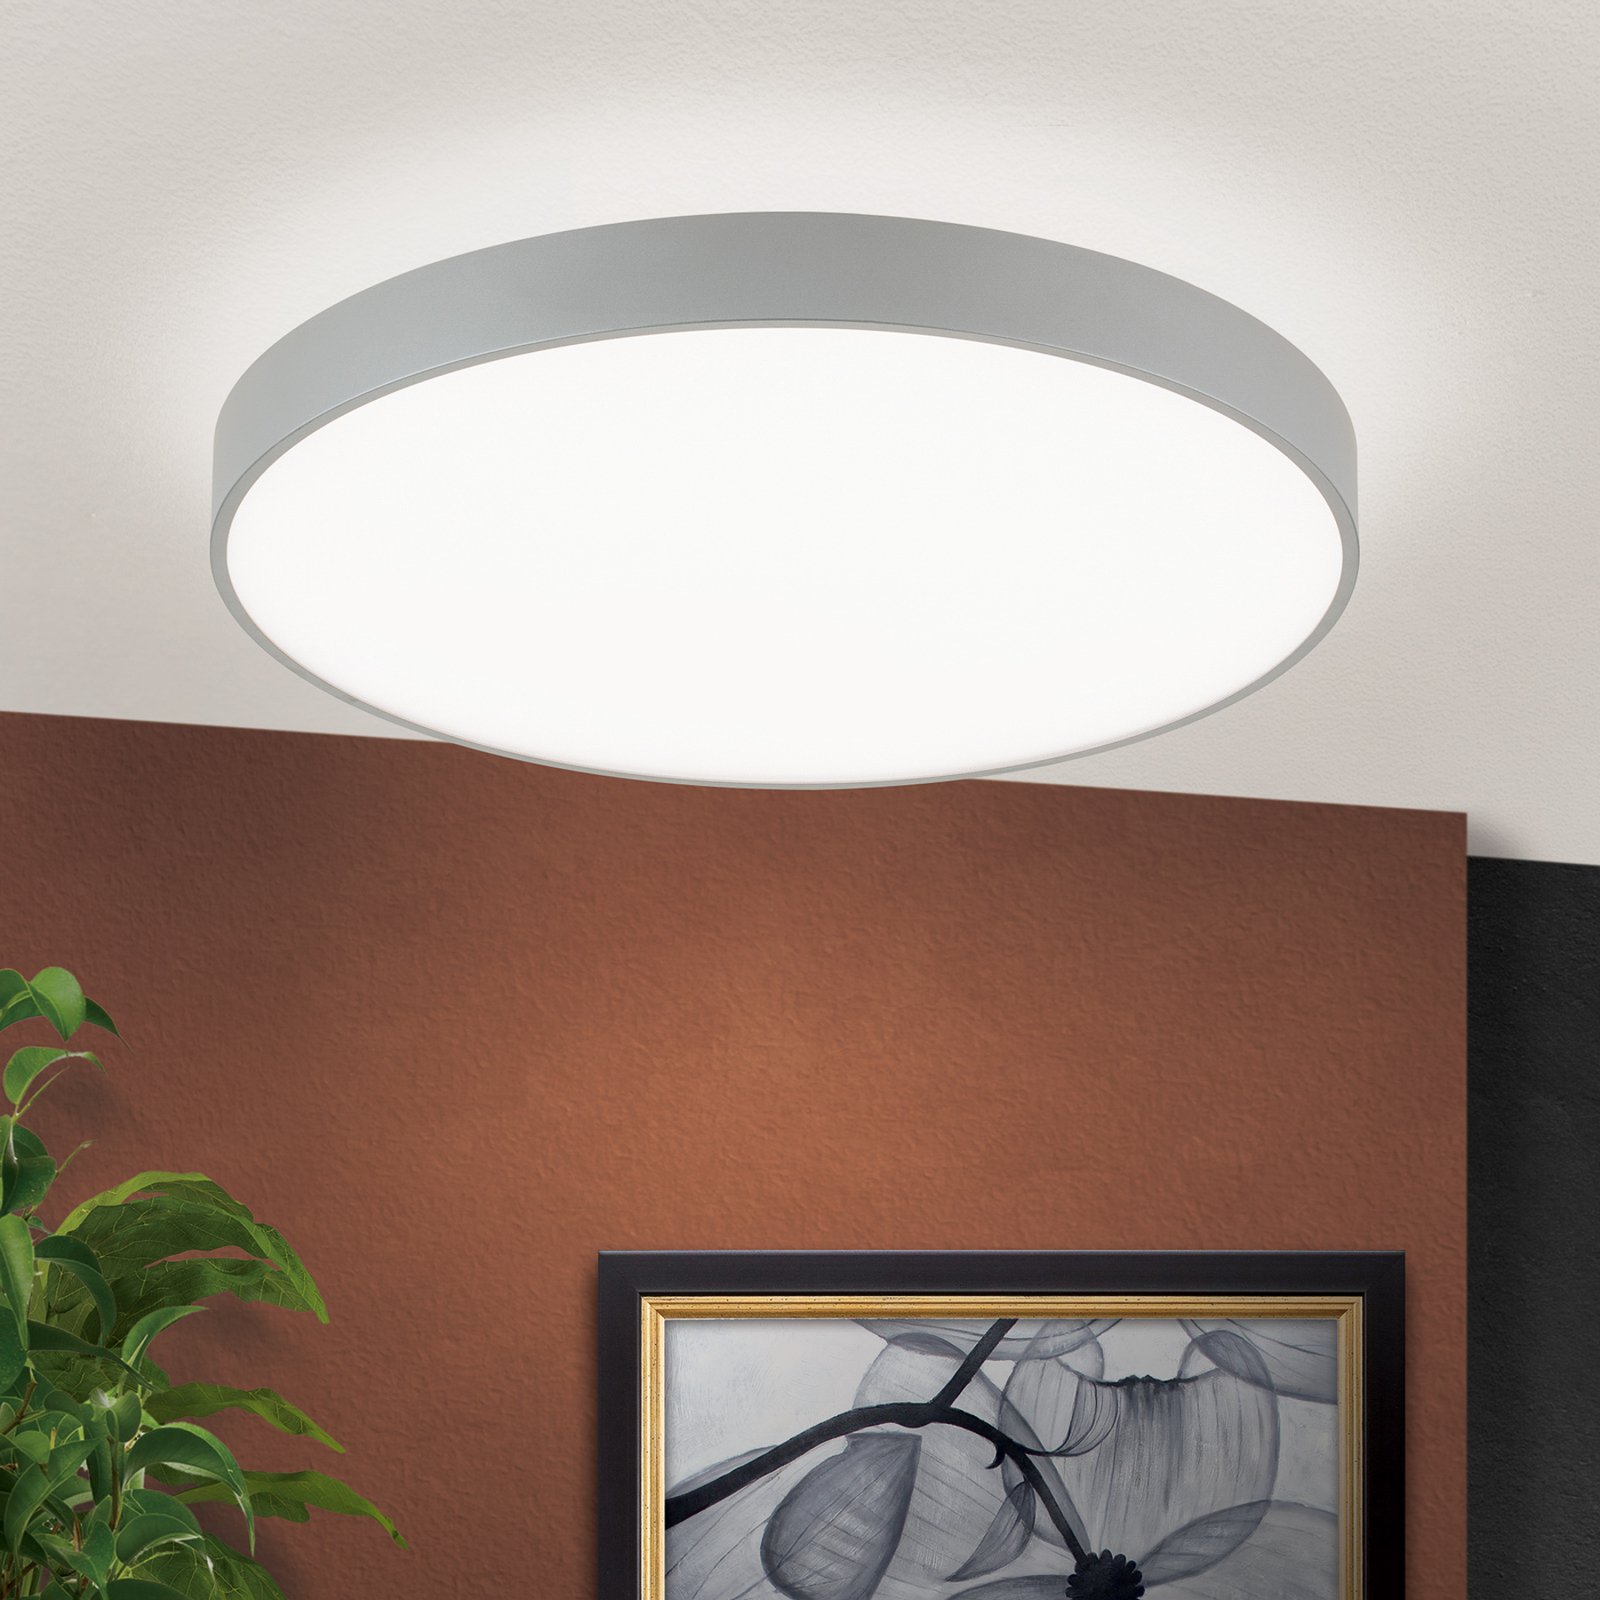 Space LED pendant light, dimmable, titanium, Ø 58 cm